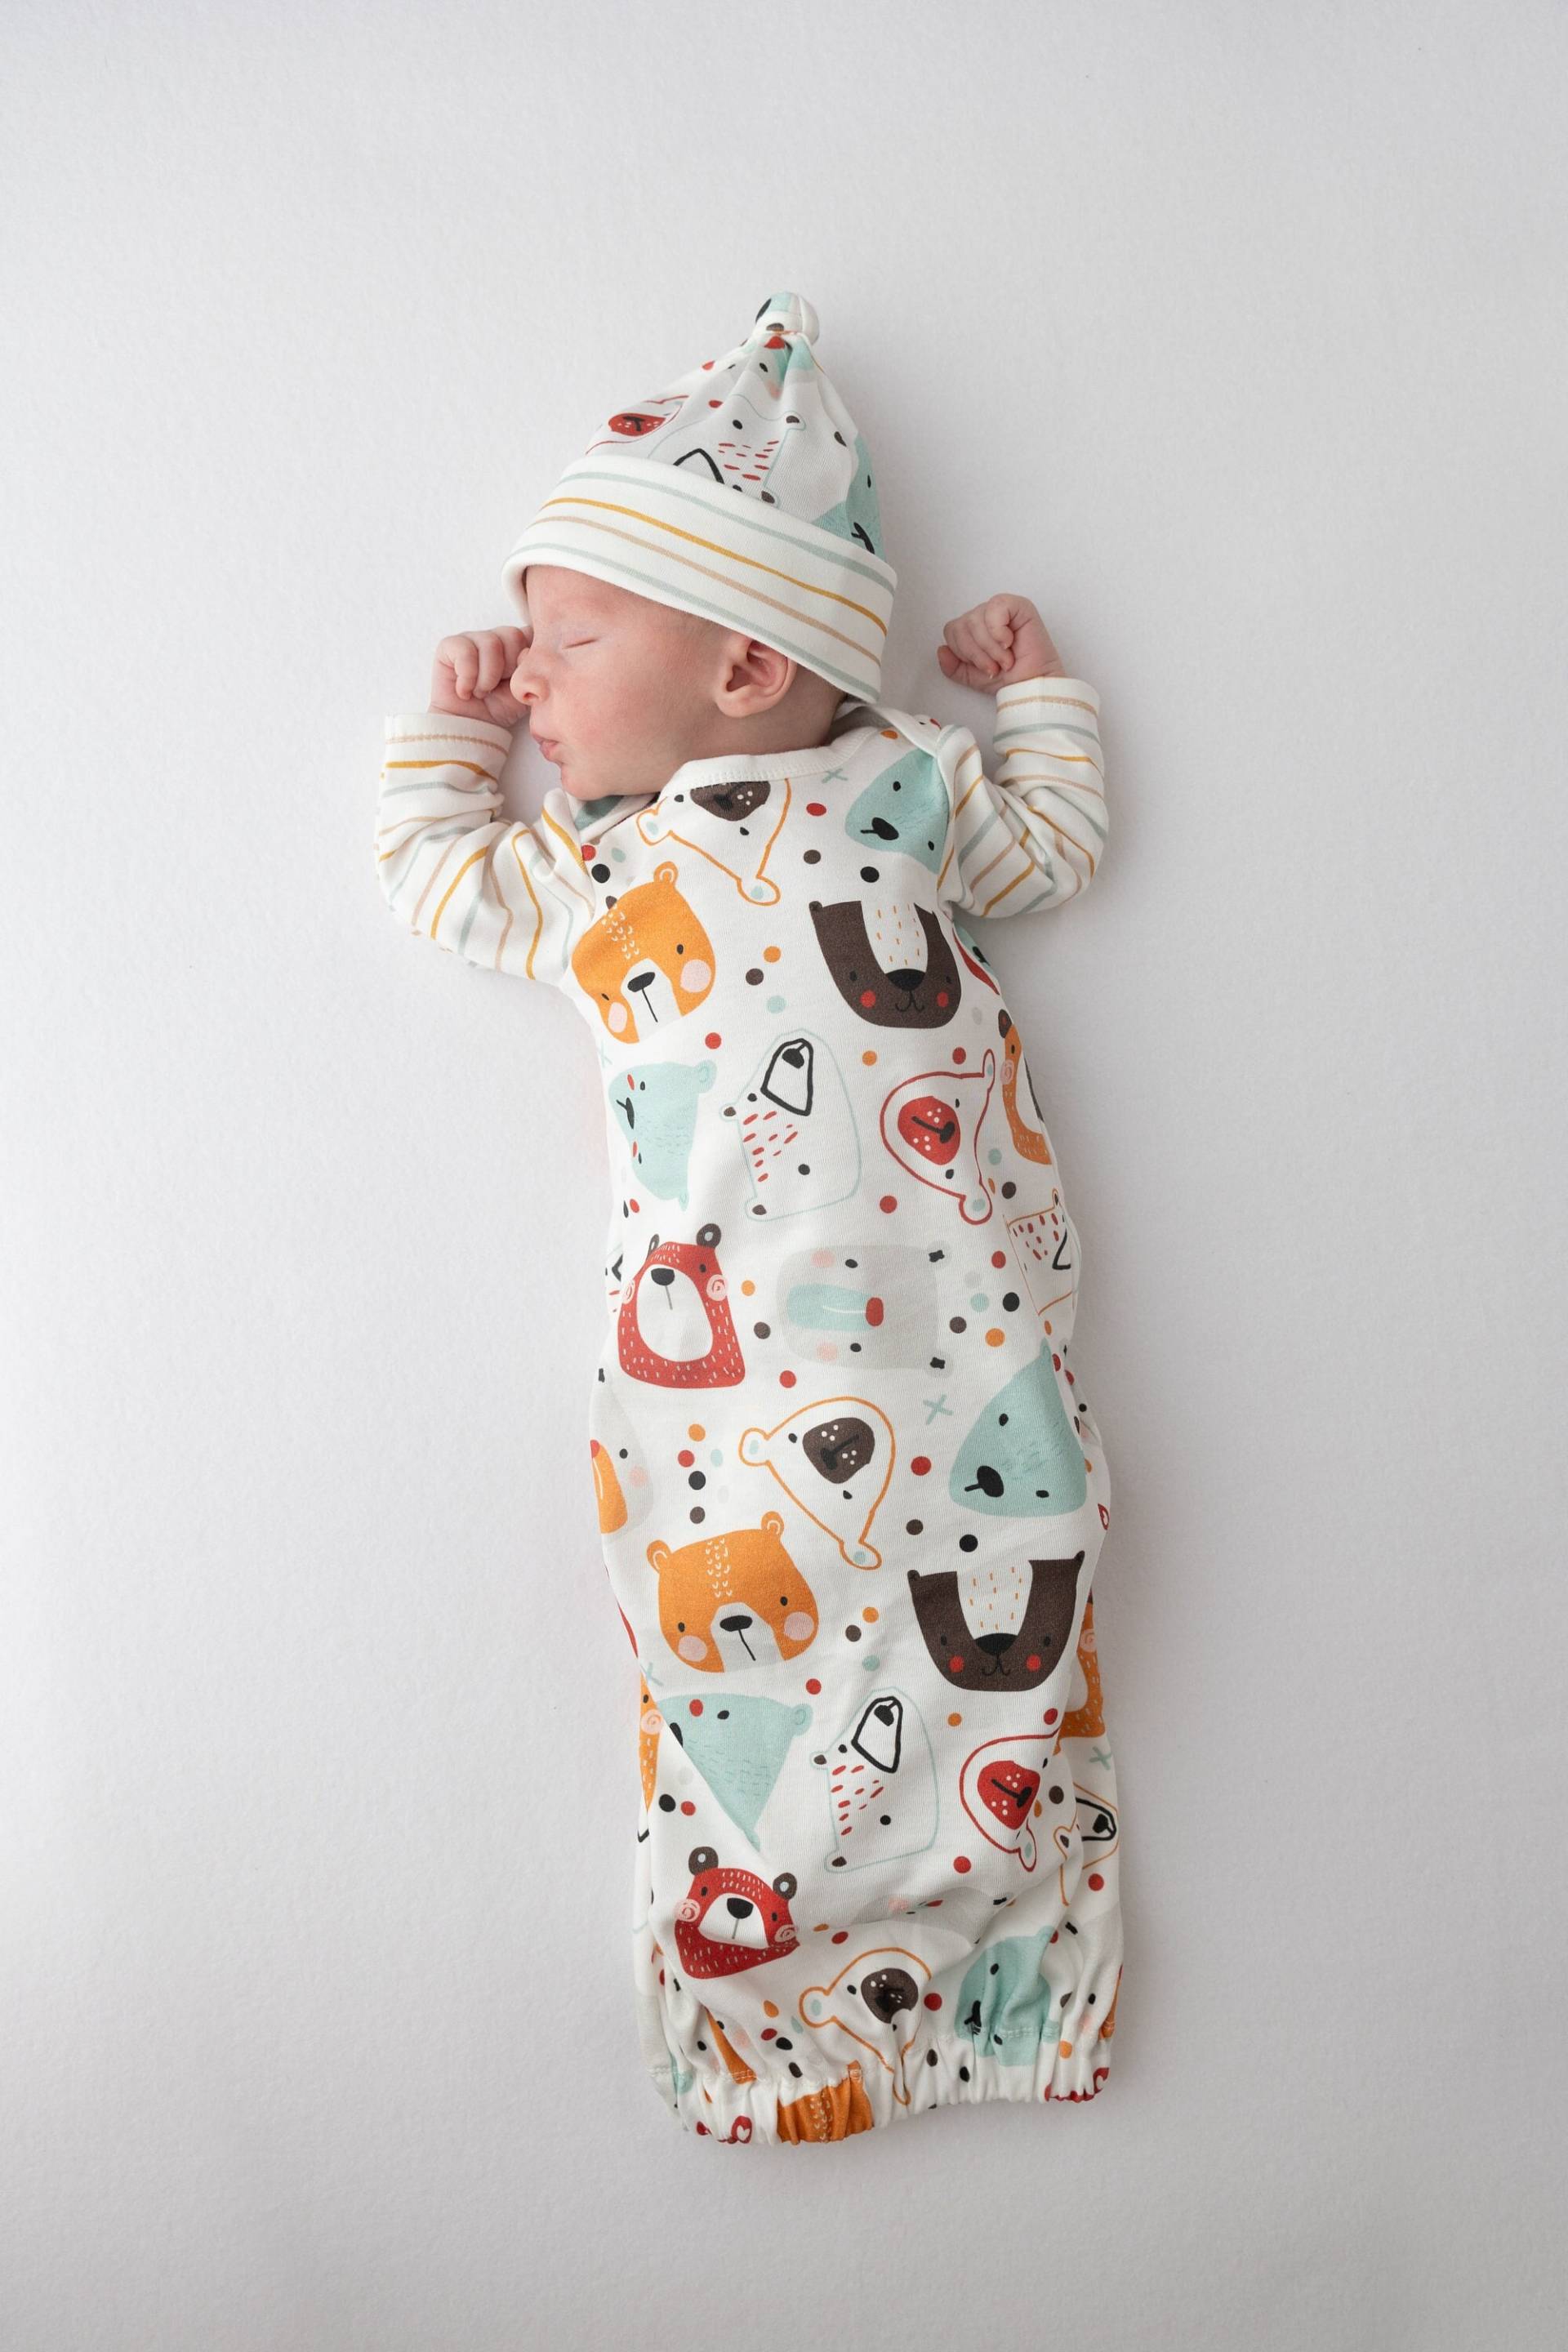 Baby Jungen Kleid, Bären Print Bio-Baumwolle Kleid Und Knotenmütze. Babypartygeschenk-Set, Vom Krankenhaus Nach Hause Kommen Baby-Outfit von URPIbaby